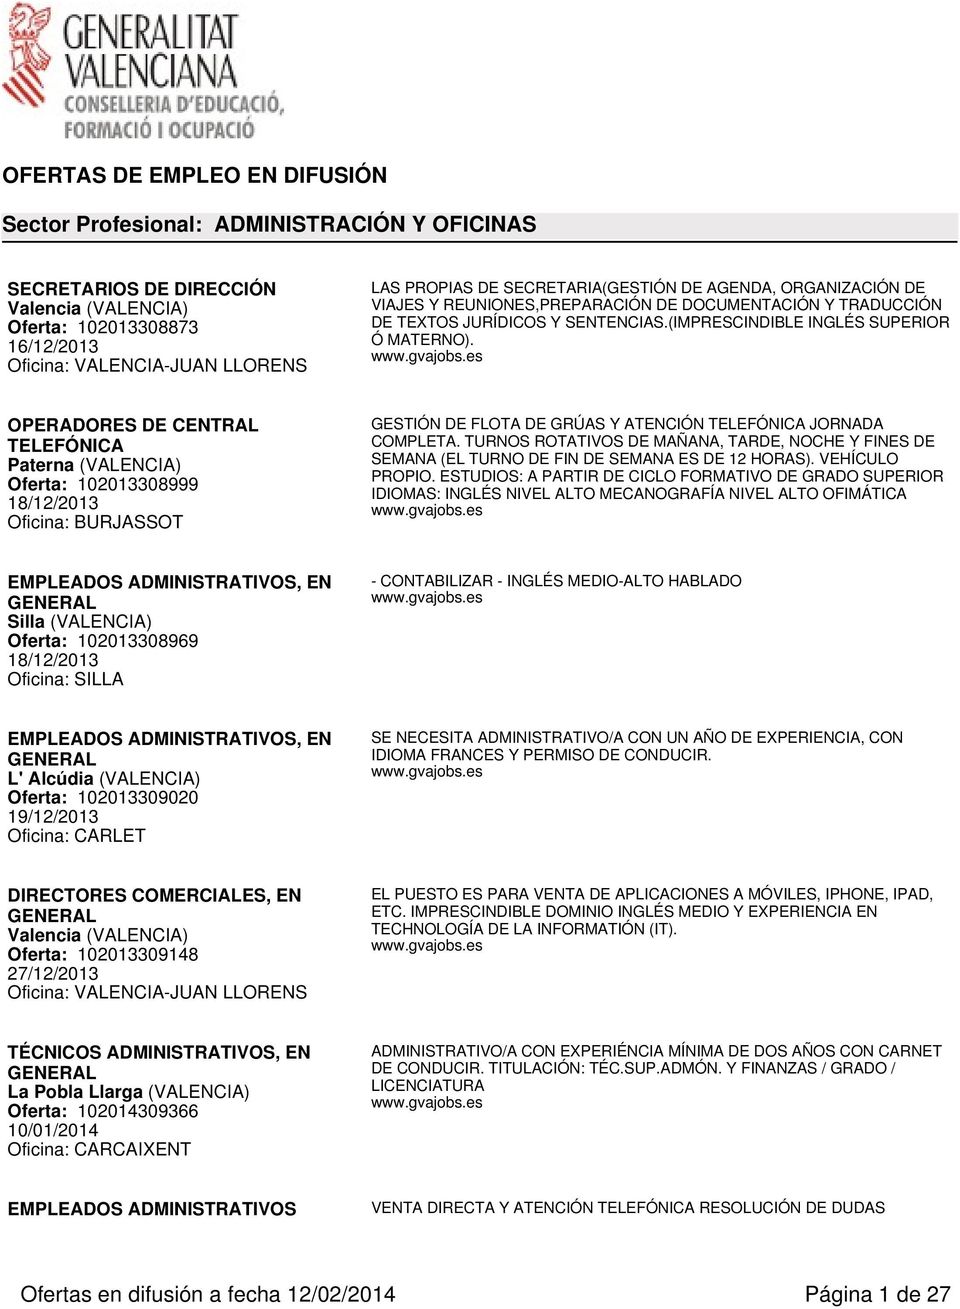 OPERADORES DE CENTRAL TELEFÓNICA Paterna (VALENCIA) Oferta: 102013308999 18/12/2013 Oficina: BURJASSOT GESTIÓN DE FLOTA DE GRÚAS Y ATENCIÓN TELEFÓNICA JORNADA COMPLETA.